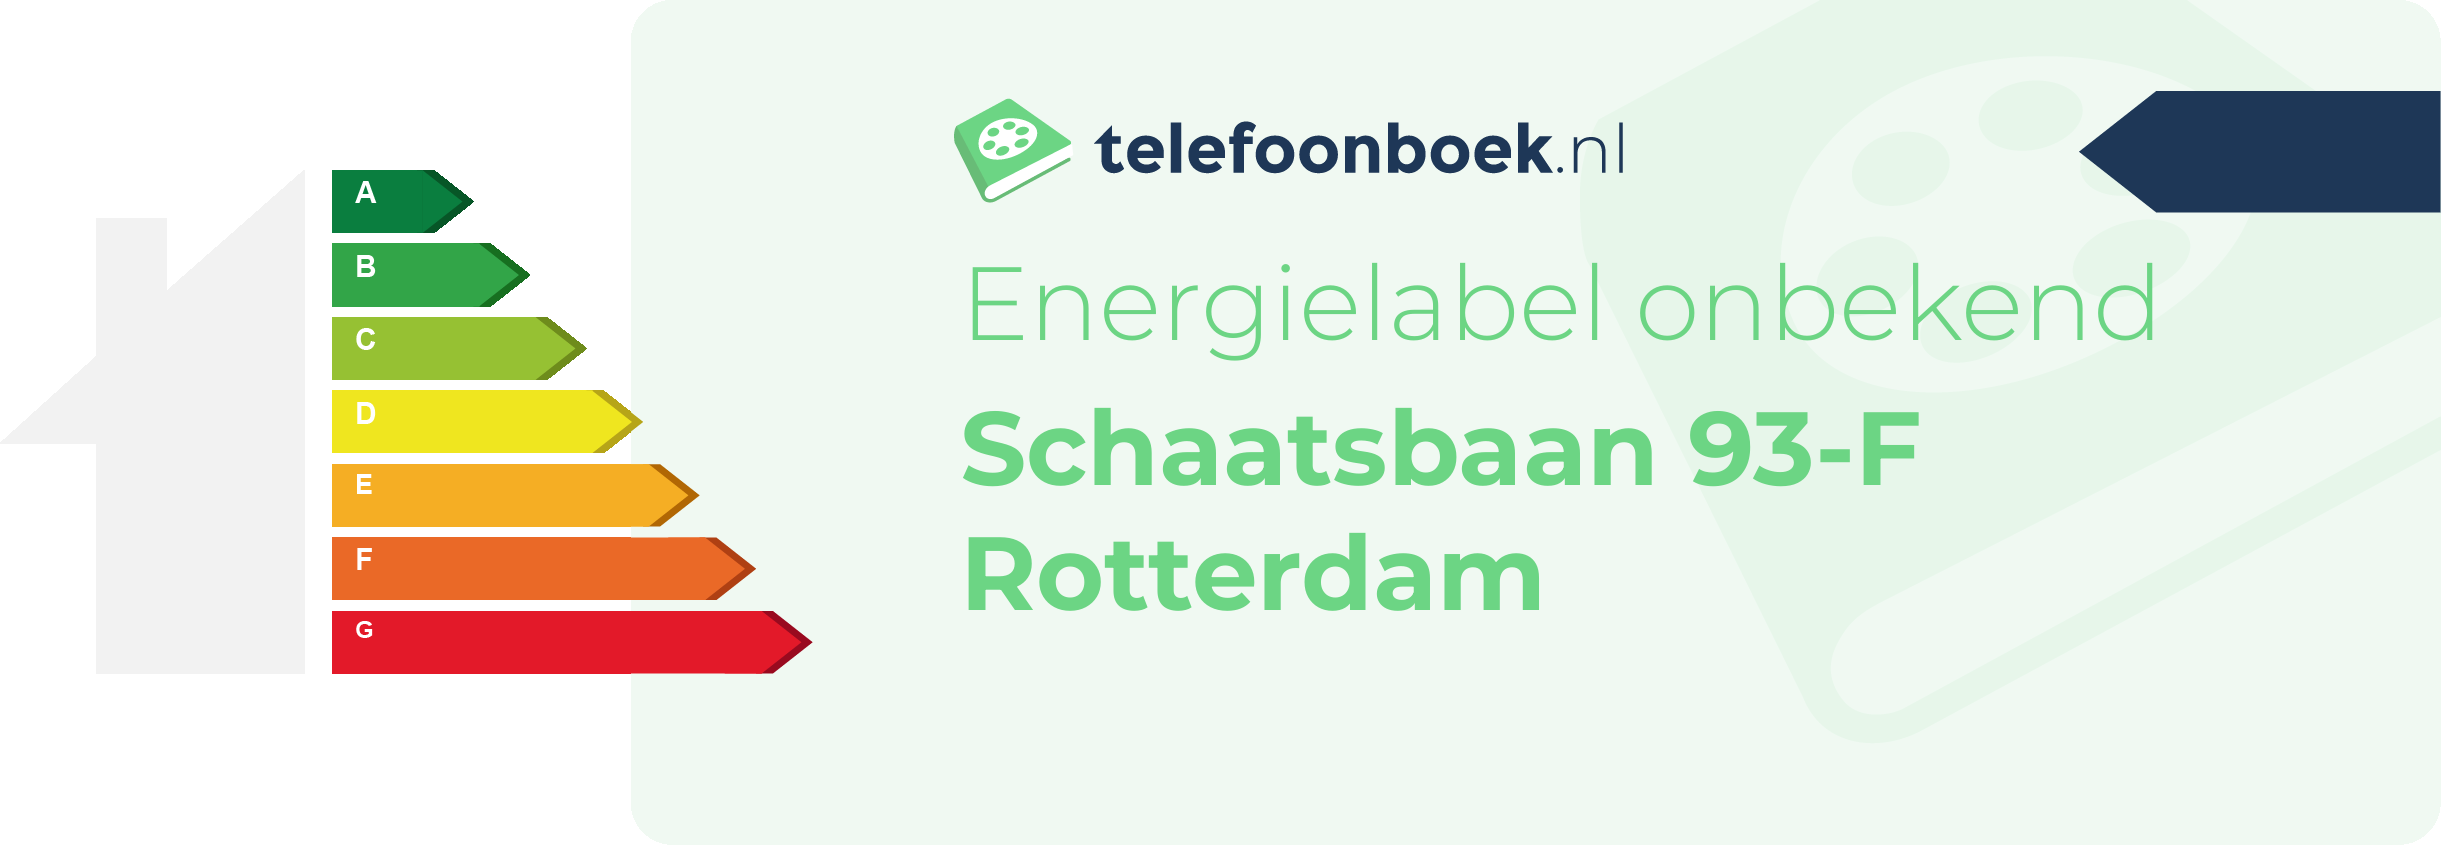 Energielabel Schaatsbaan 93-F Rotterdam